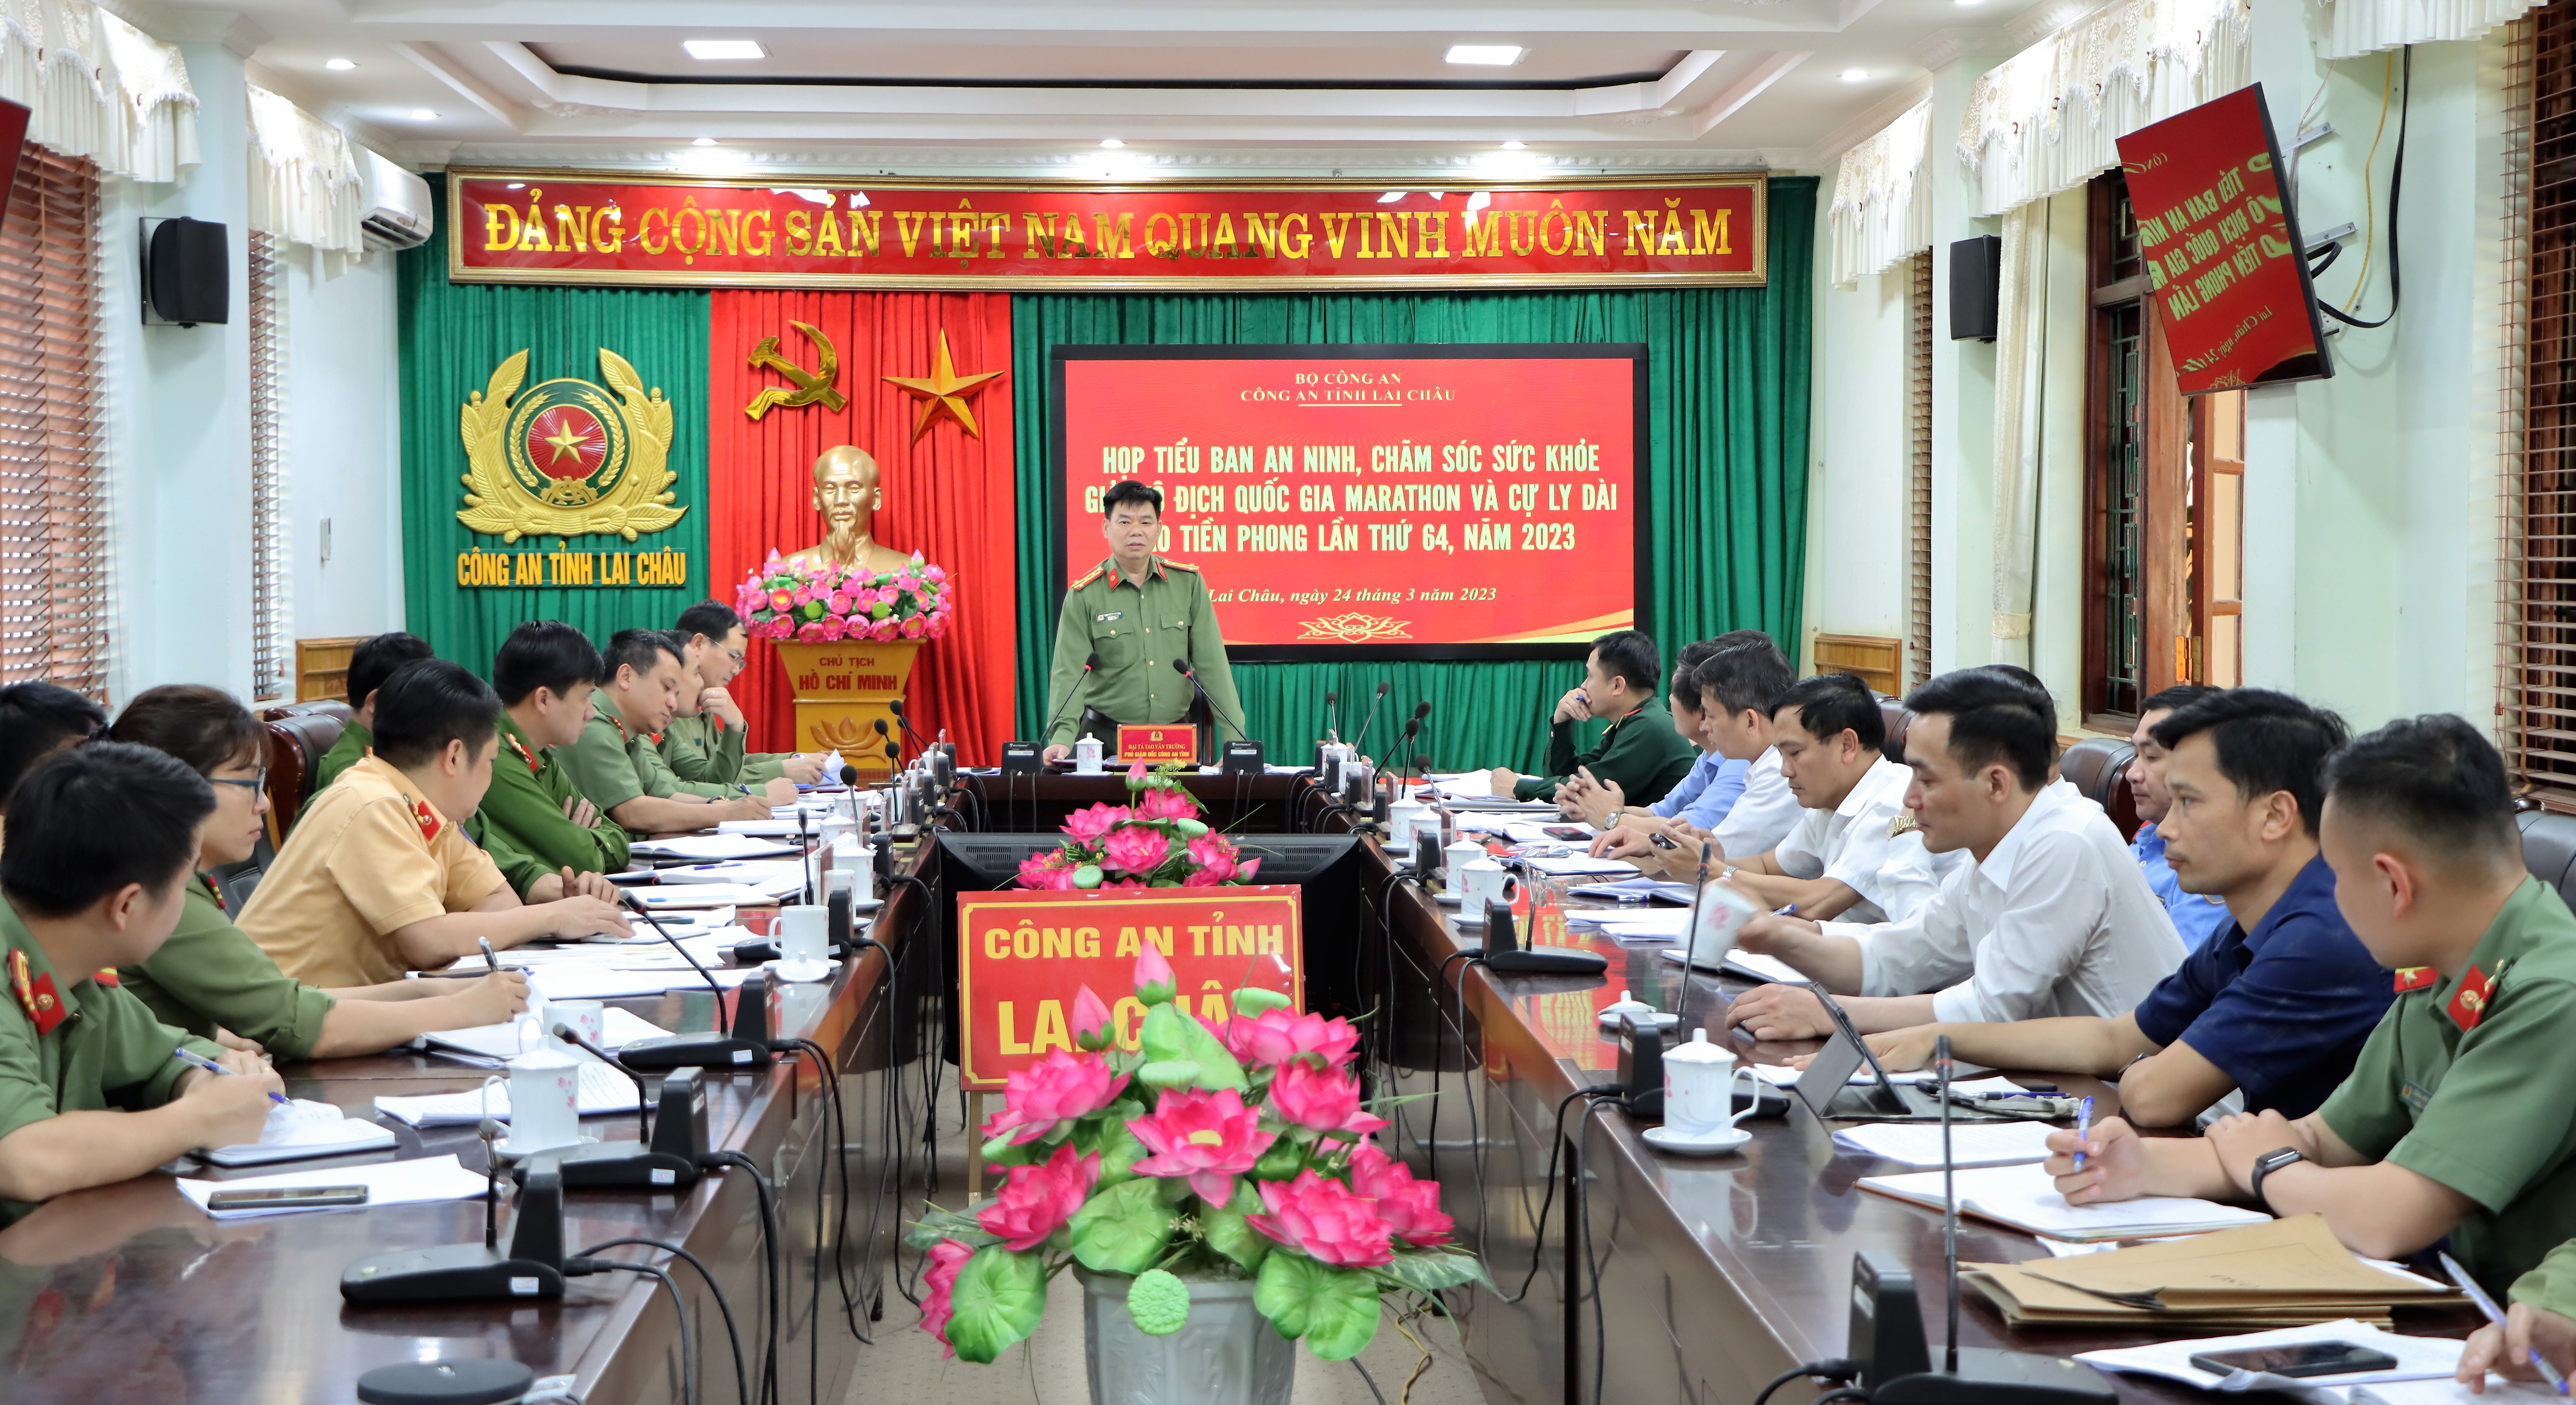 Đại tá Tao Văn Trường - Phó Giám đốc Công an tỉnh, Trưởng Tiểu ban phát biểu chỉ đạo tại cuộc họp